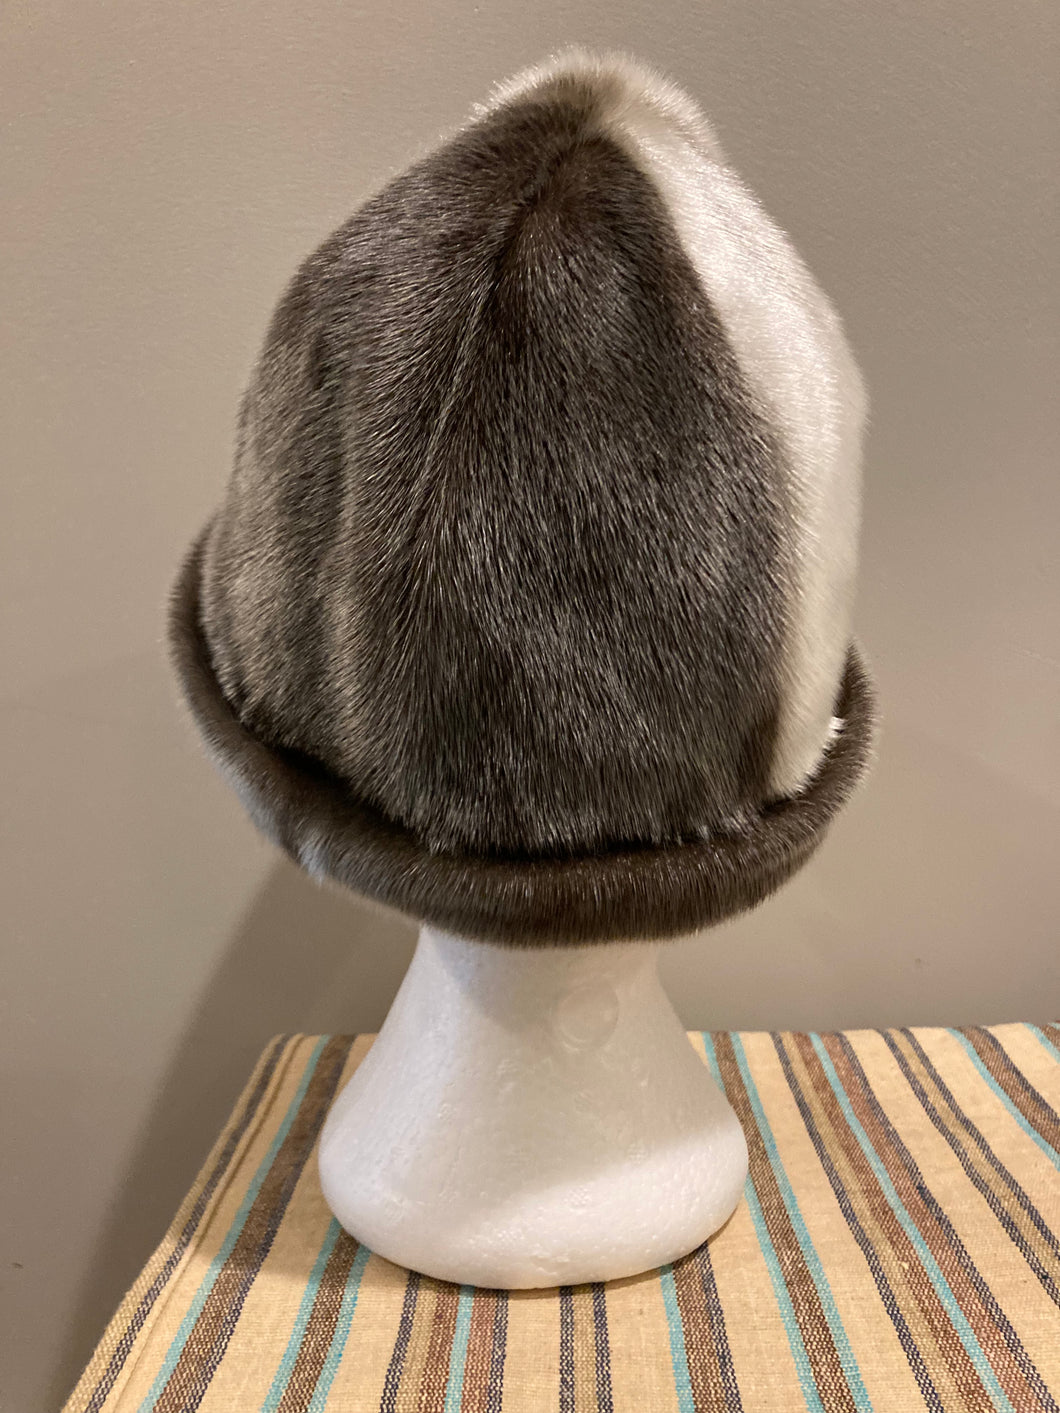 Kingspier Vintage - Vintage Indigenous made natural fur hat.